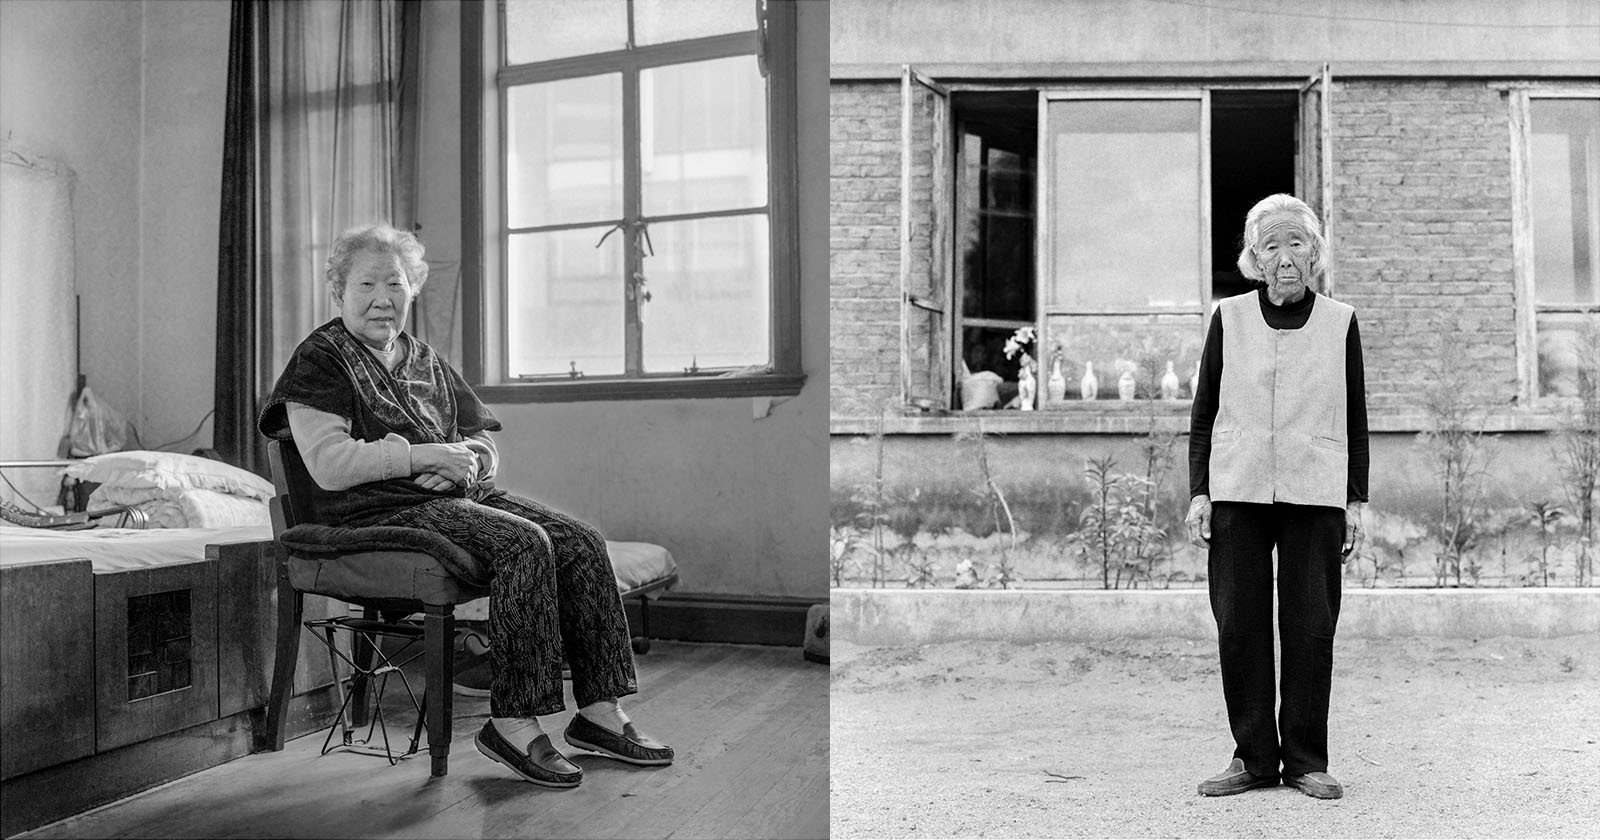  photographer portraits comfort women confront japan colonial past 